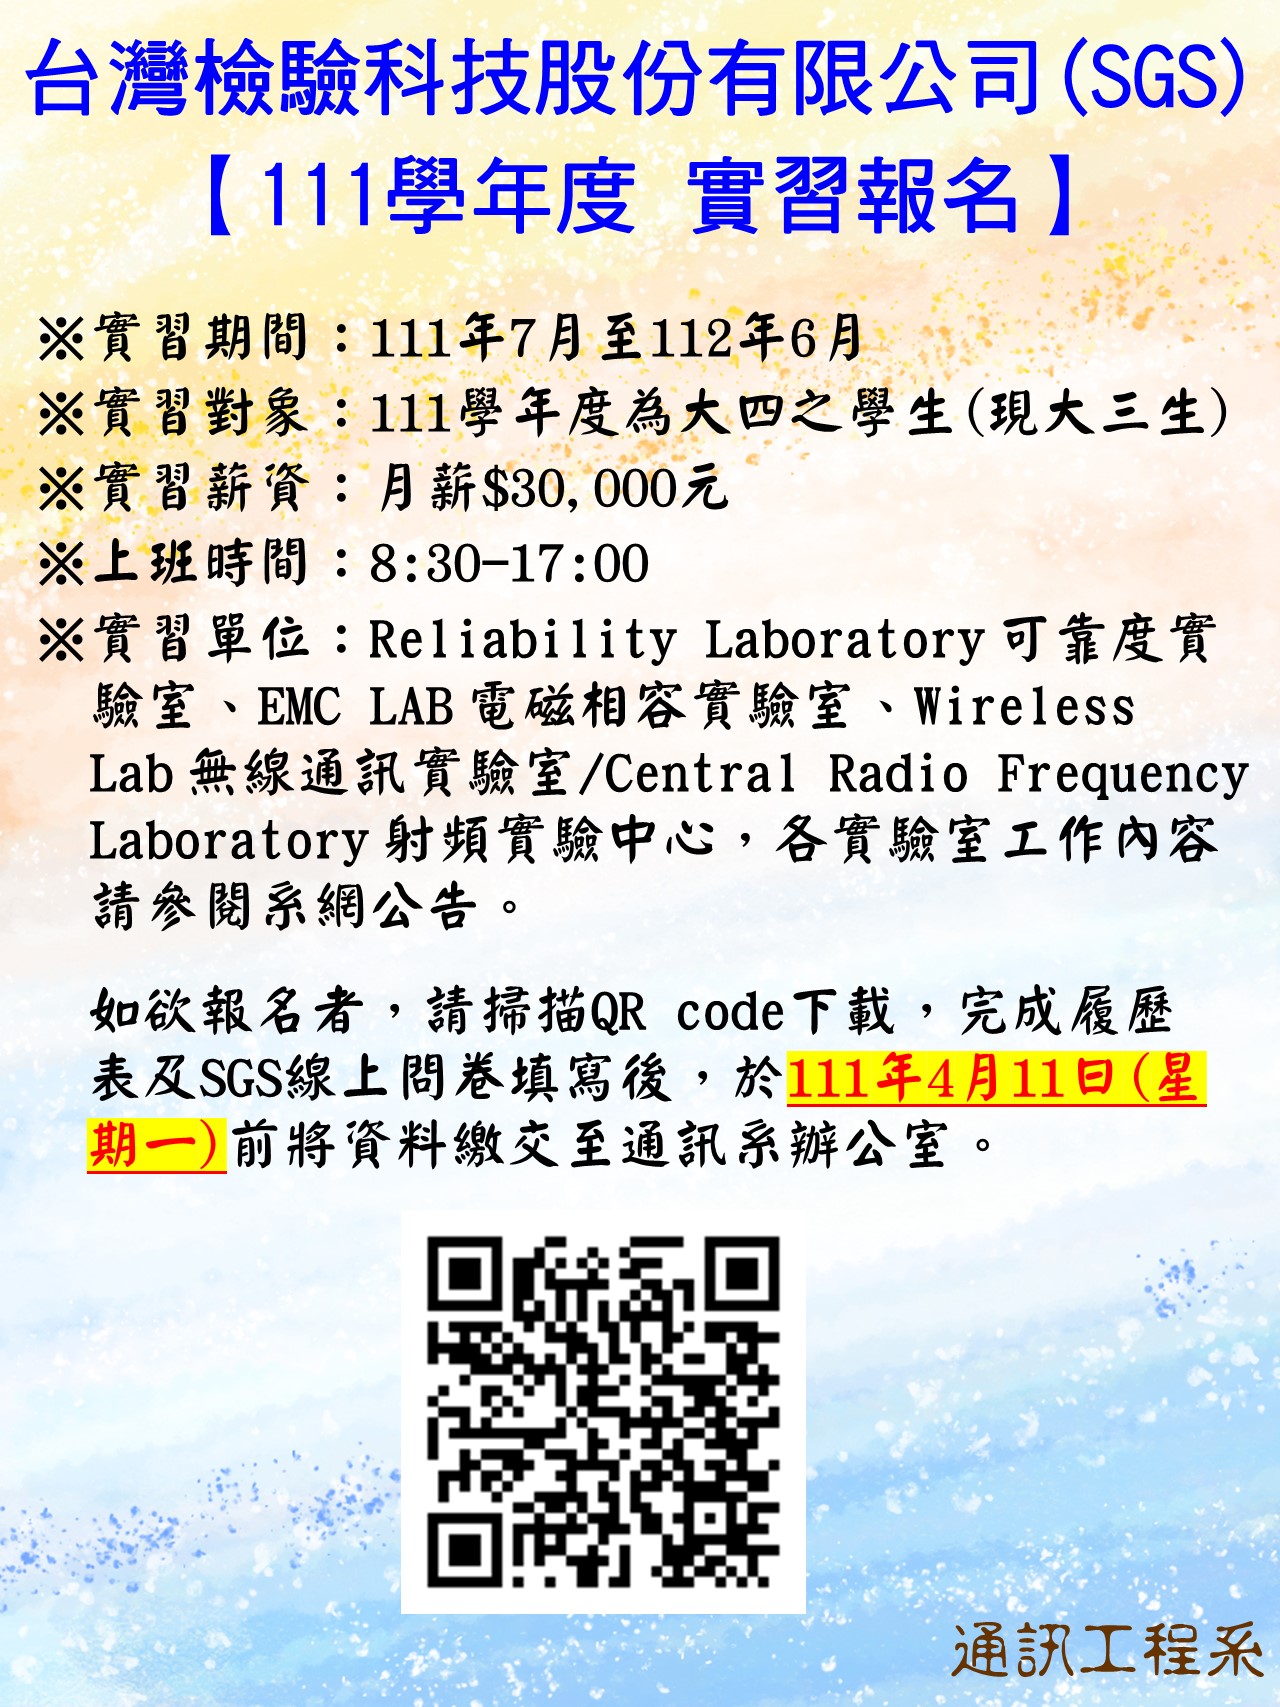 【111學年度 實習報名】台灣檢驗科技股份有限公司(SGS)(另開新視窗)